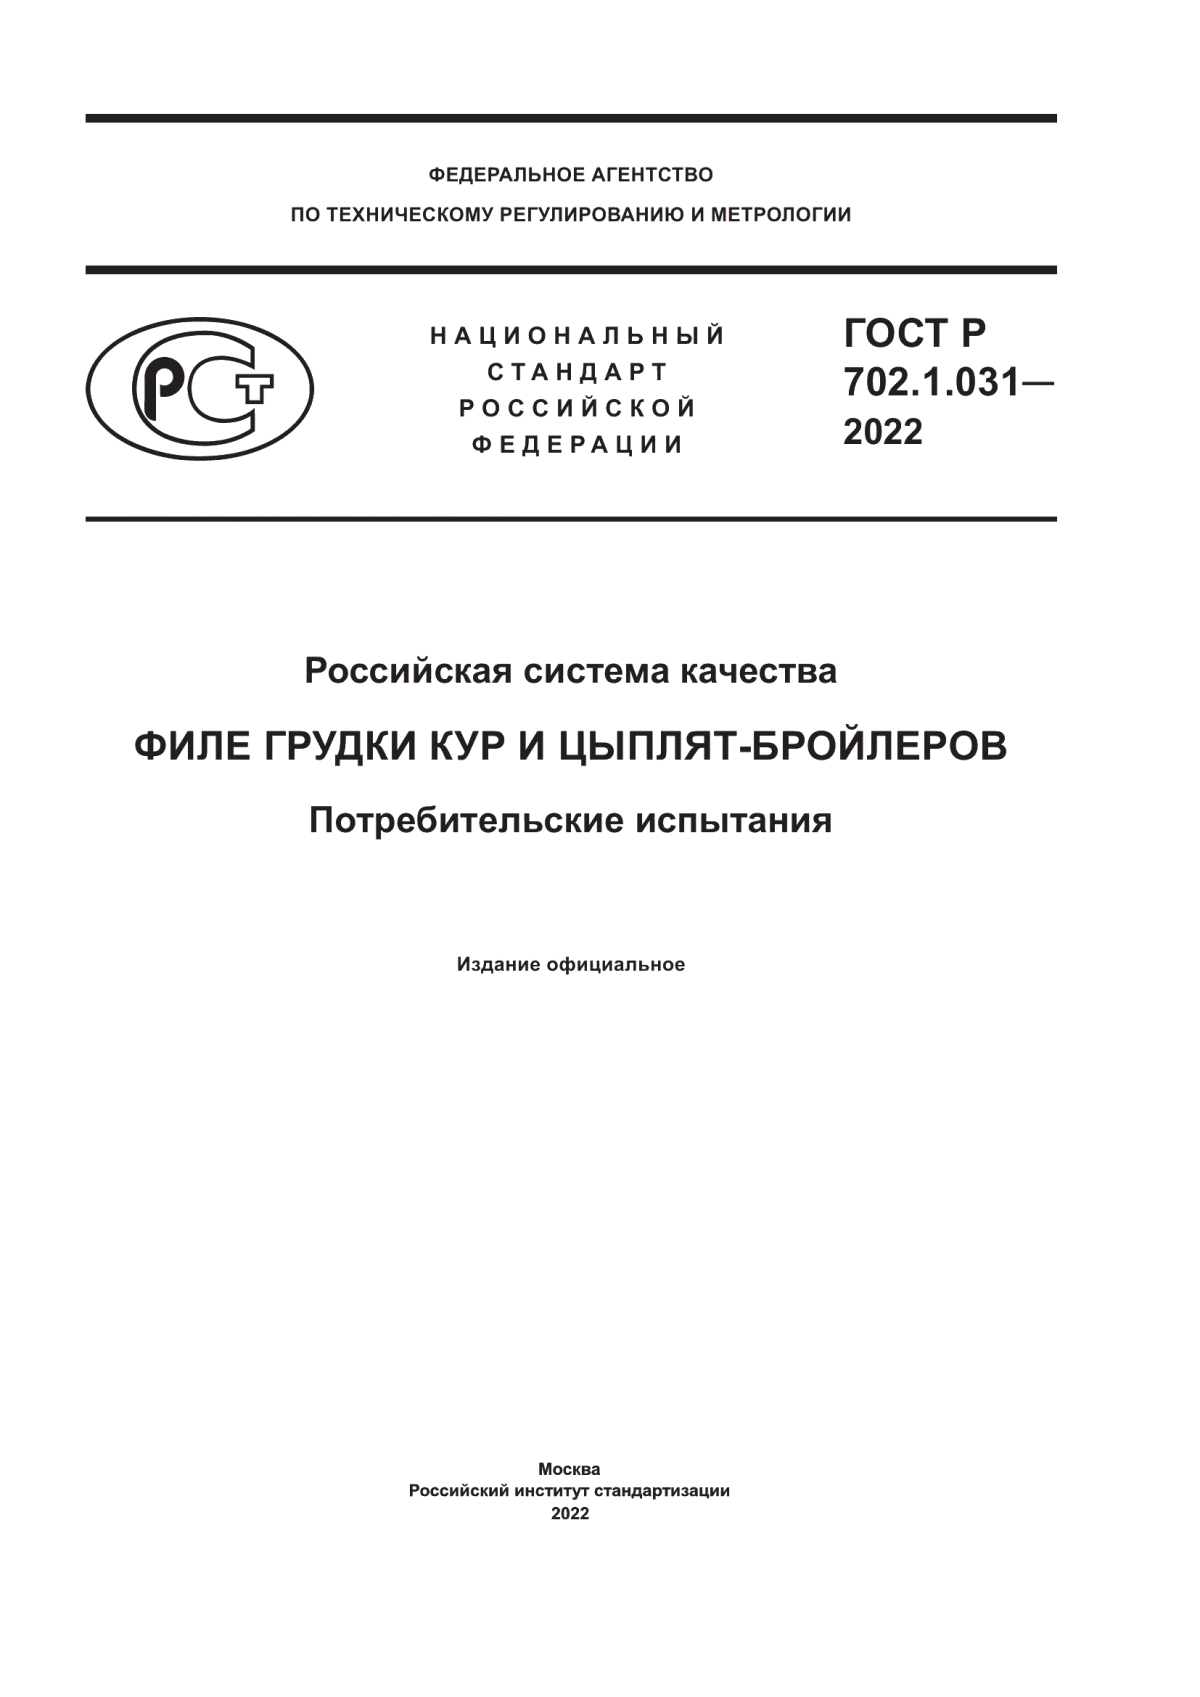 ГОСТ Р 702.1.031-2022 Российская система качества. Филе грудки кур и цыплят-бройлеров. Потребительские испытания